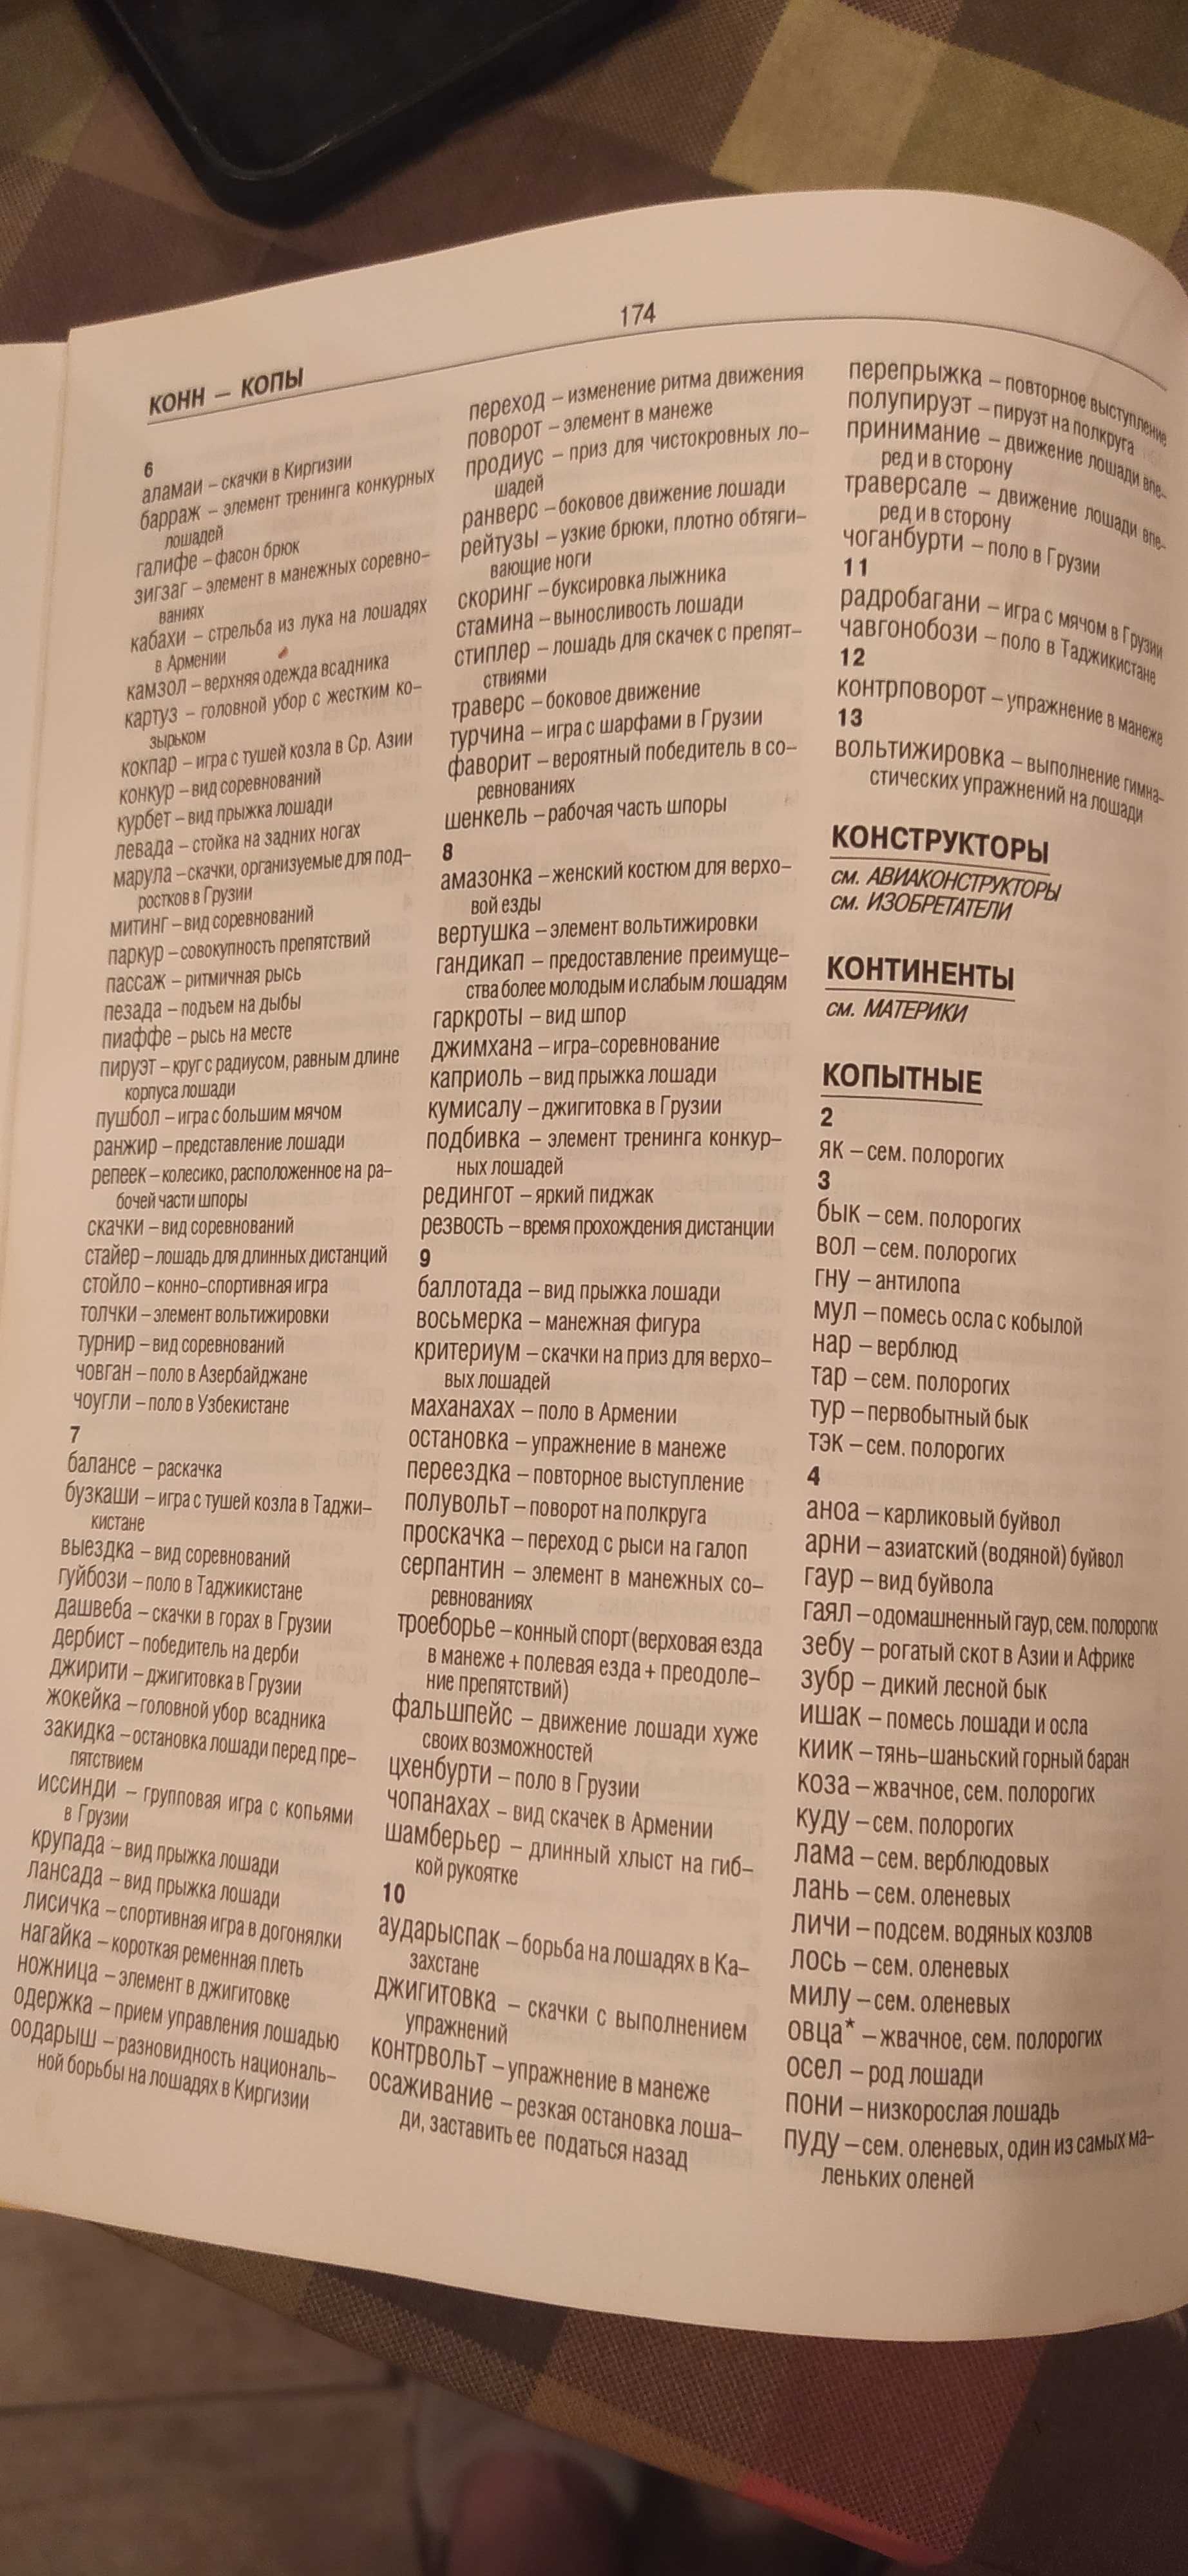 Большой энциклопедический словарь любителя кроссвордов. Более 100 тыс